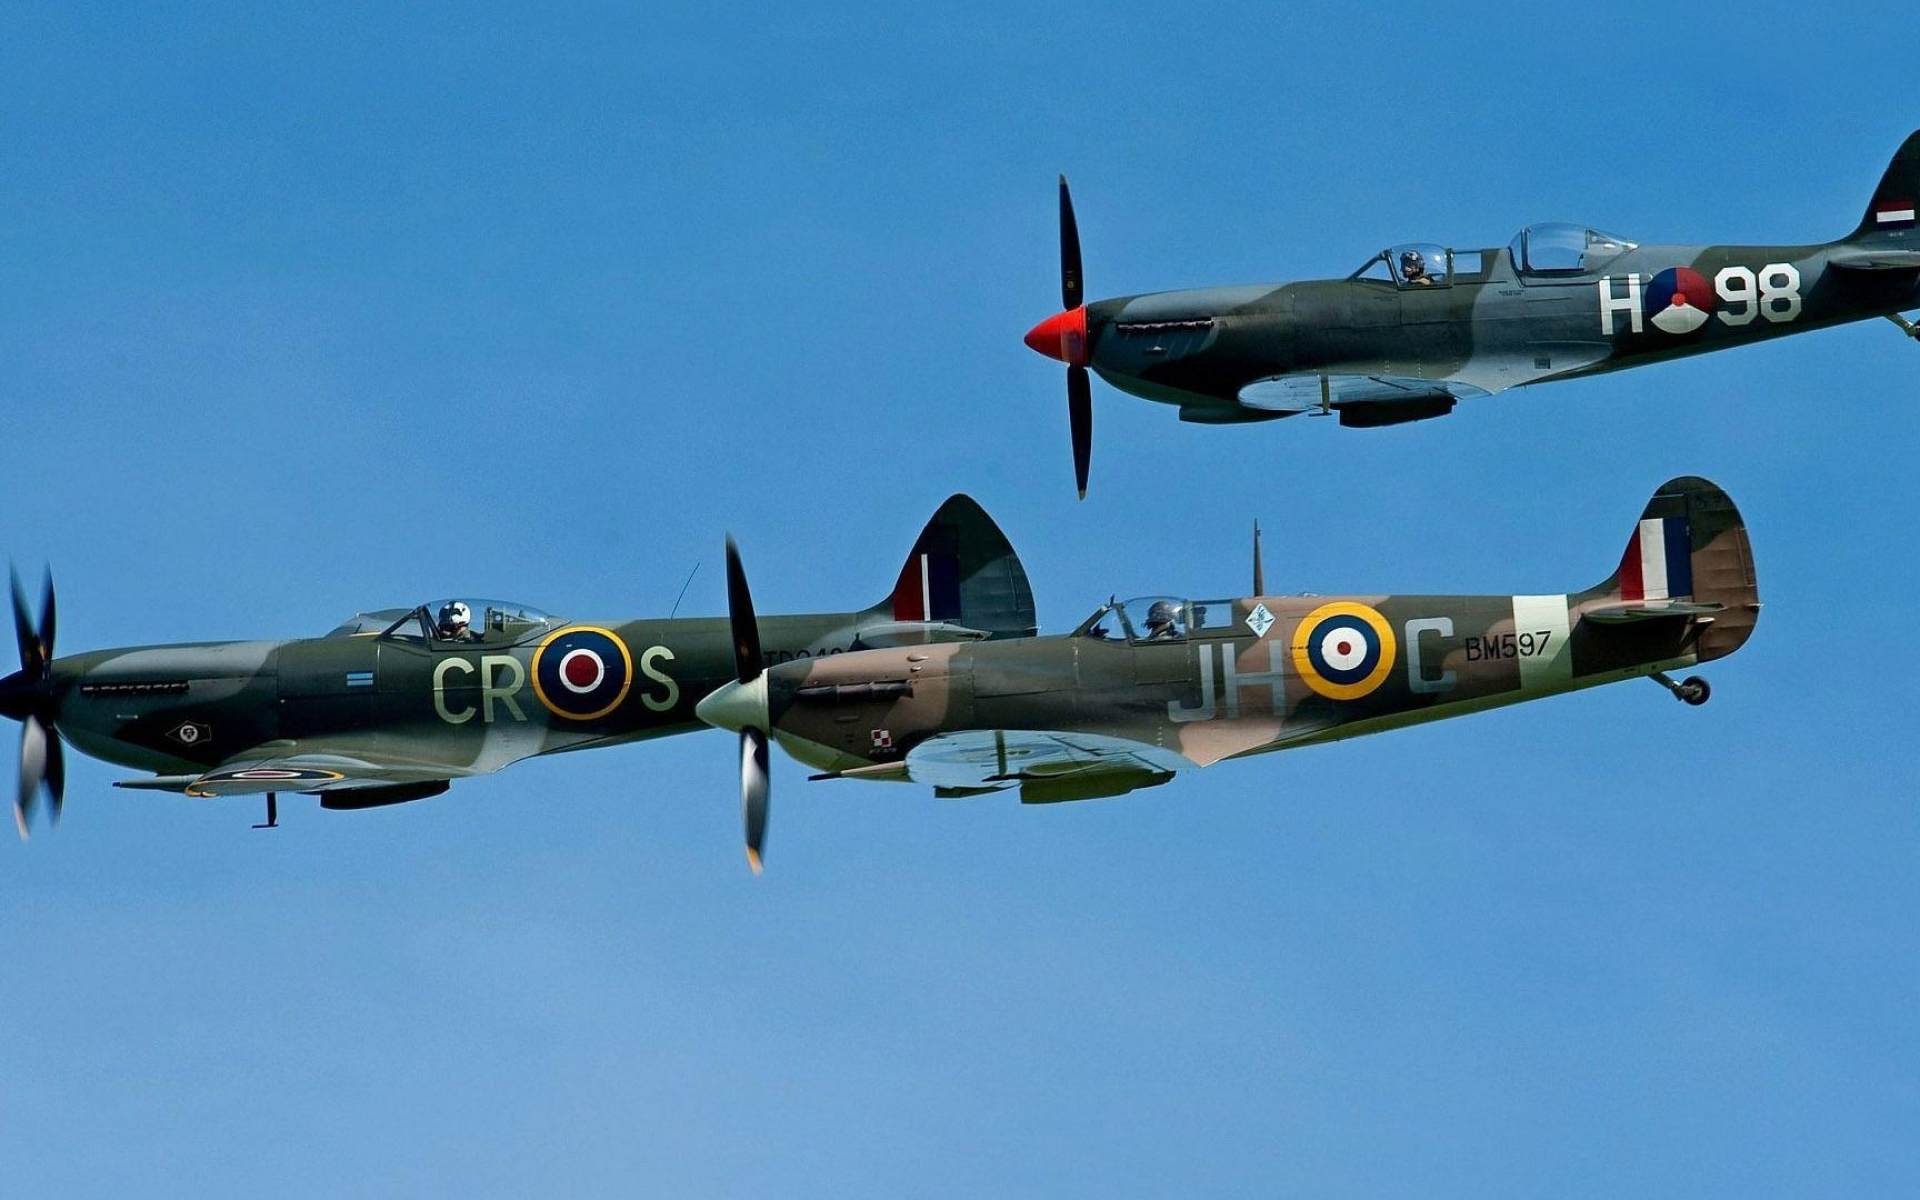 Spitfire wallpapers, Aircraft beauty, Warbird marvel, Flying legend, 1920x1200 HD Desktop